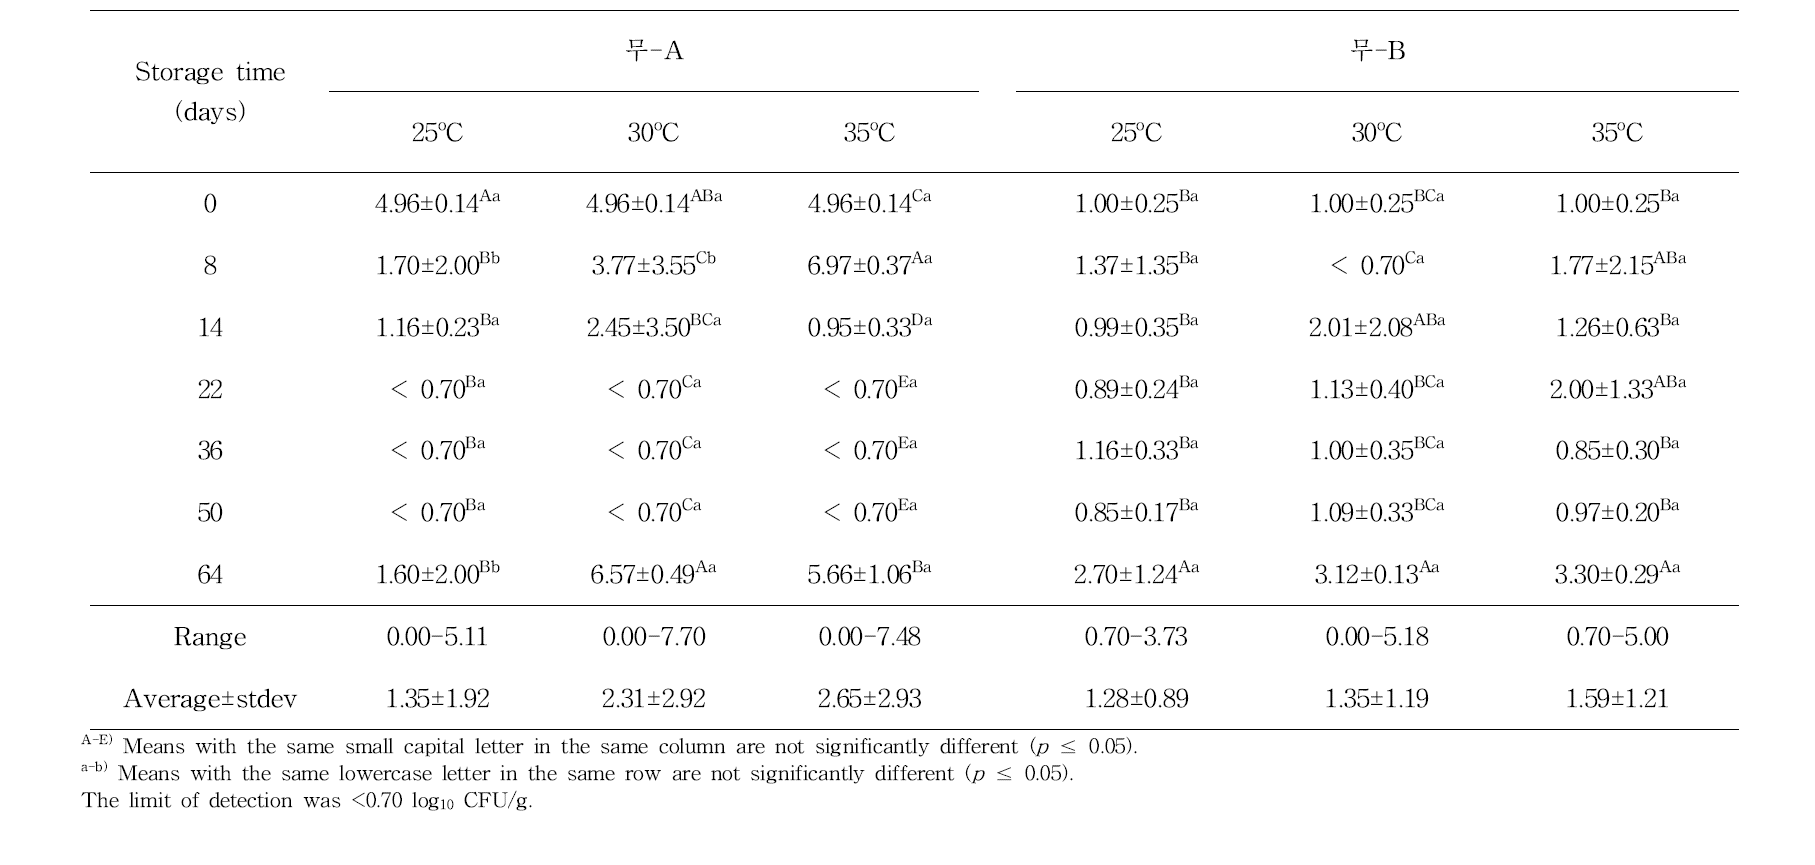 저장온도에 따른 저장기간 동안 무말랭이의 곰팡이수(log10 CFU/g) 변화